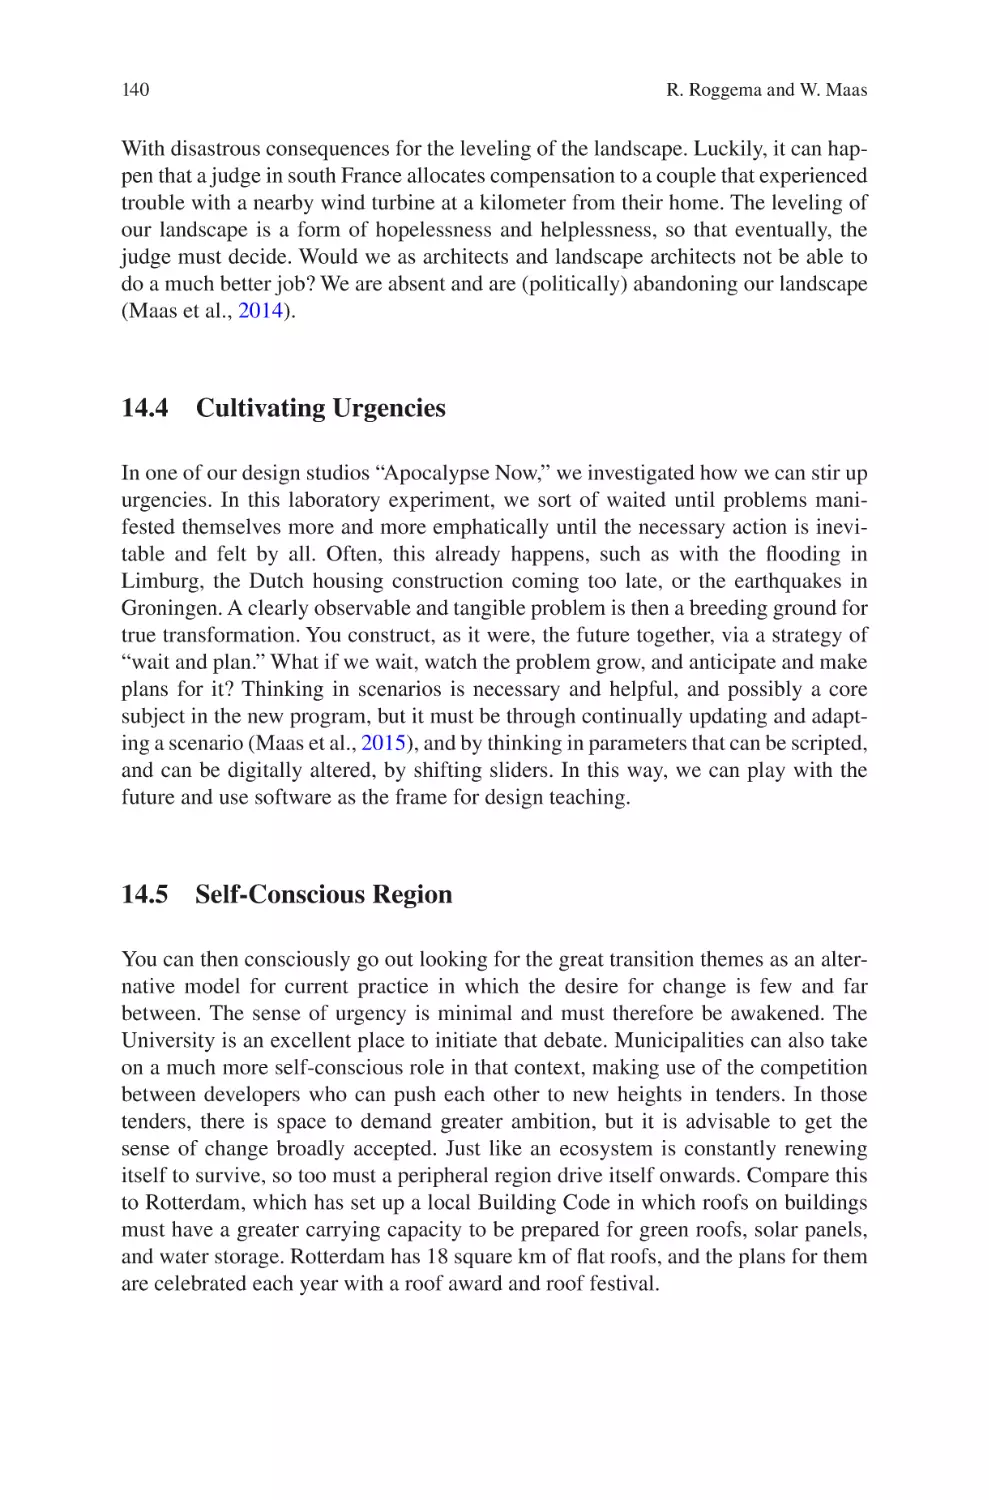 14.4 Cultivating Urgencies
14.5 Self-Conscious Region